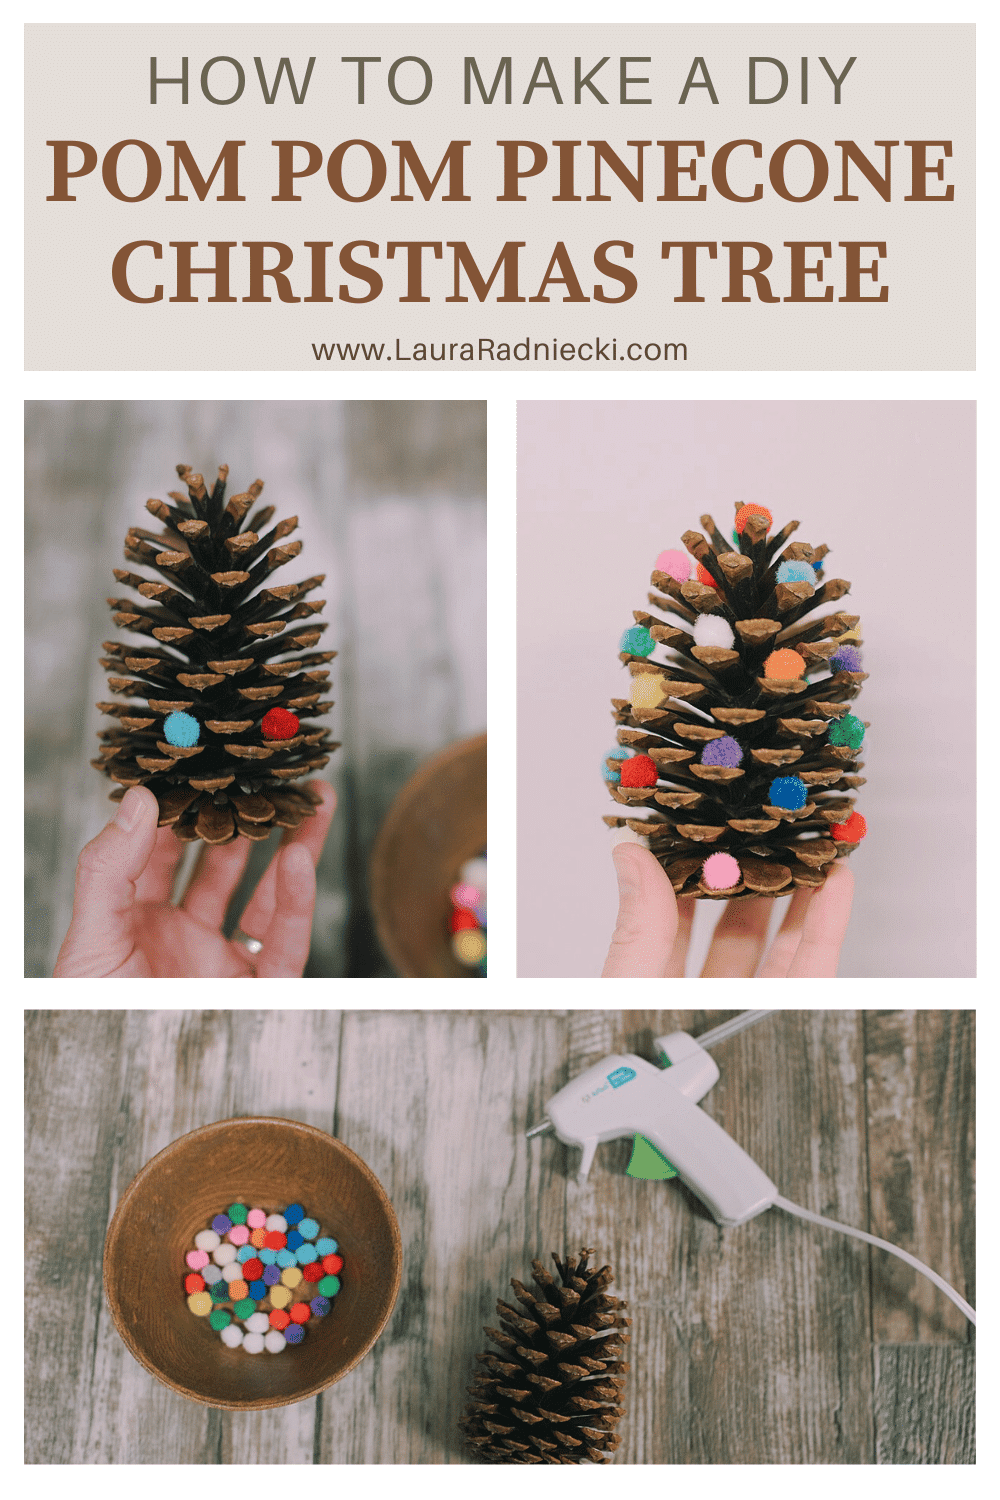 How to Make DIY Pom Pom Pinecone Christmas Trees